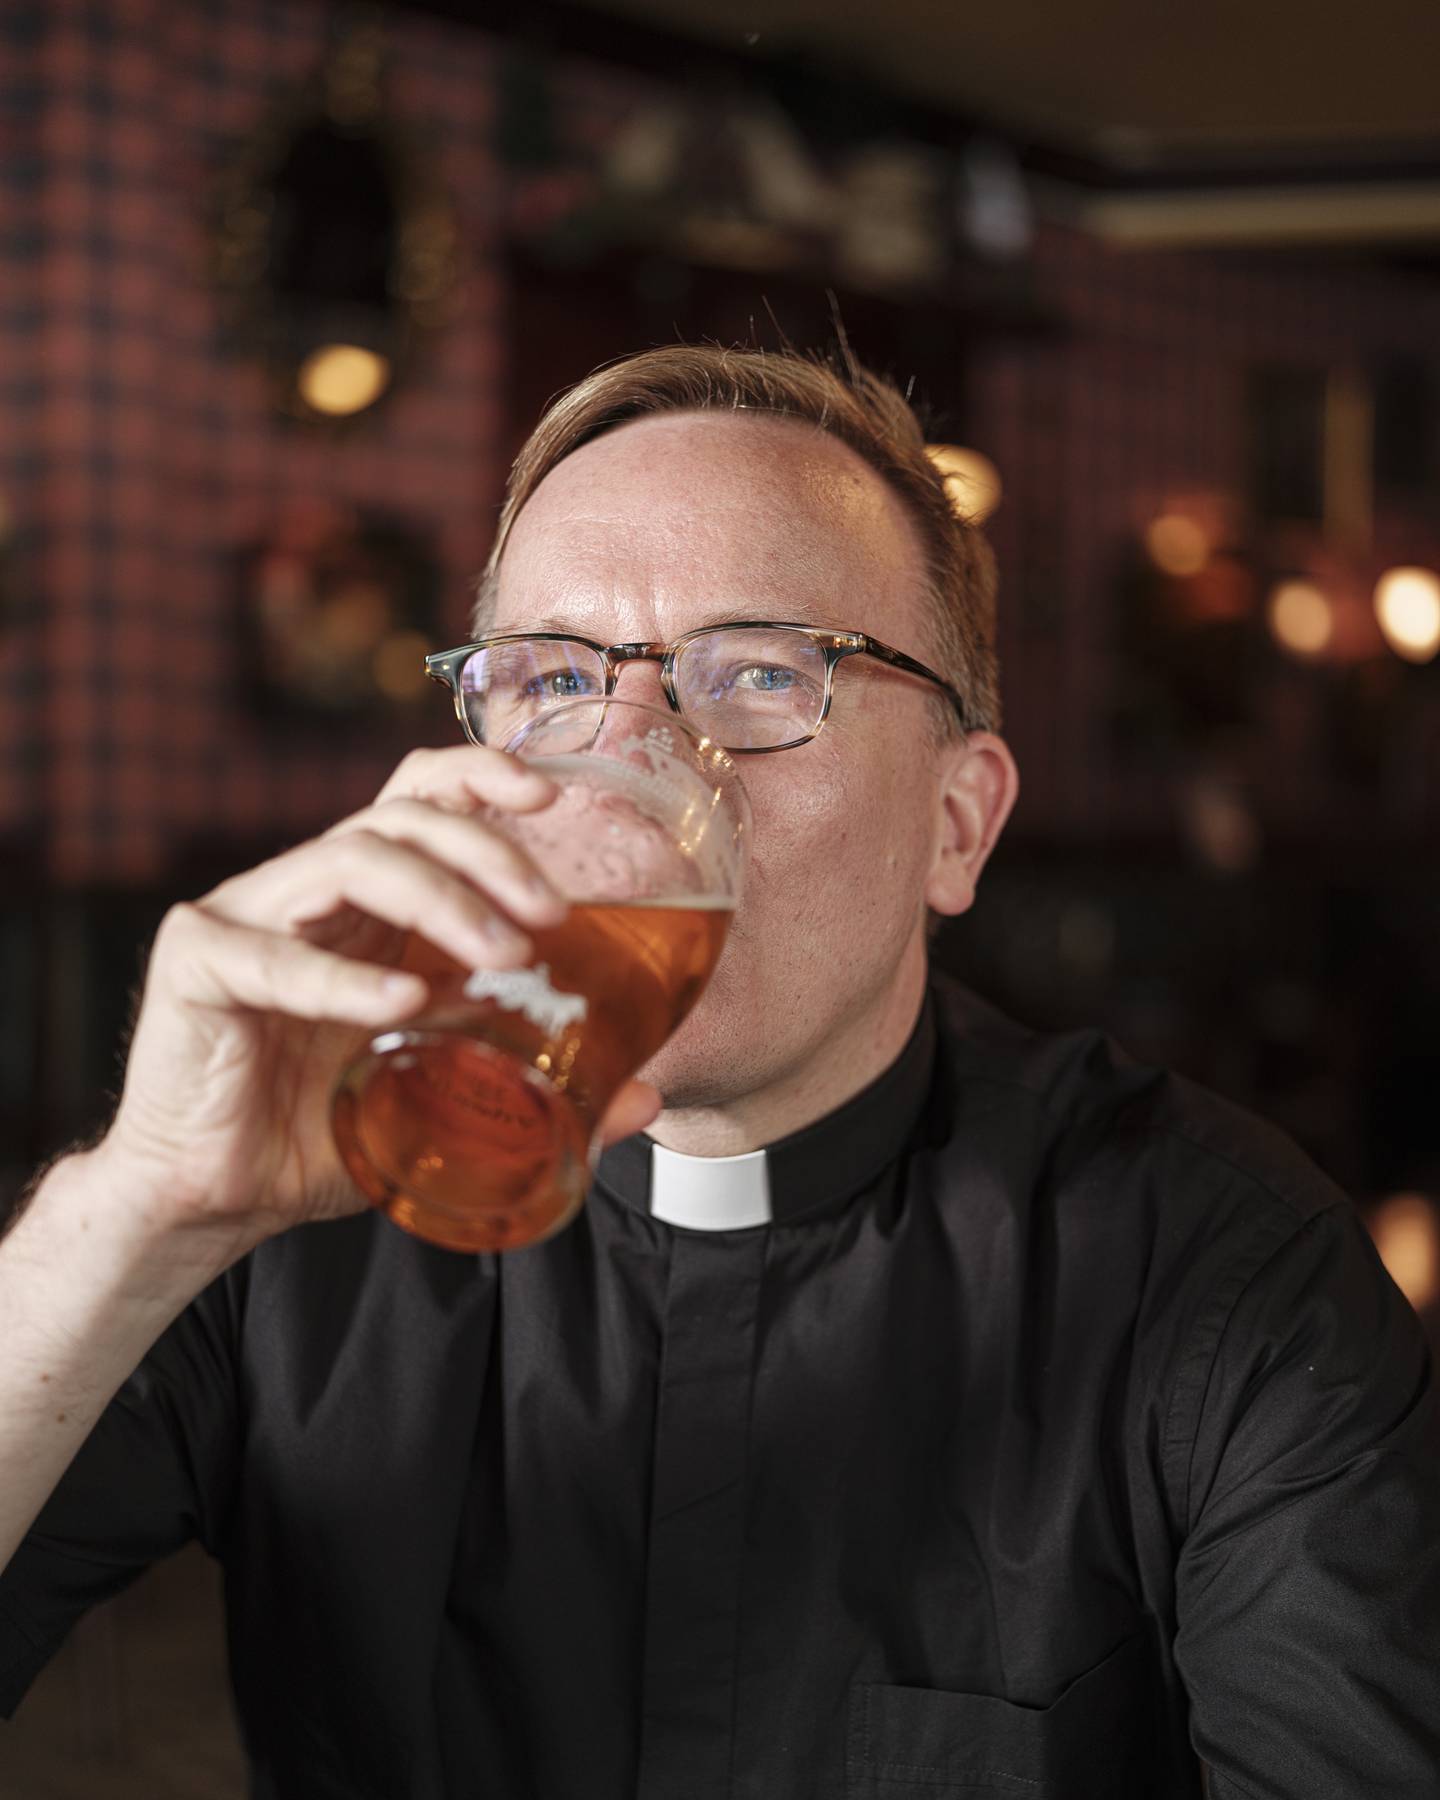 På en pub i Oslo har den katolske presten Pål Bratbak blitt med på en halvliter øl.